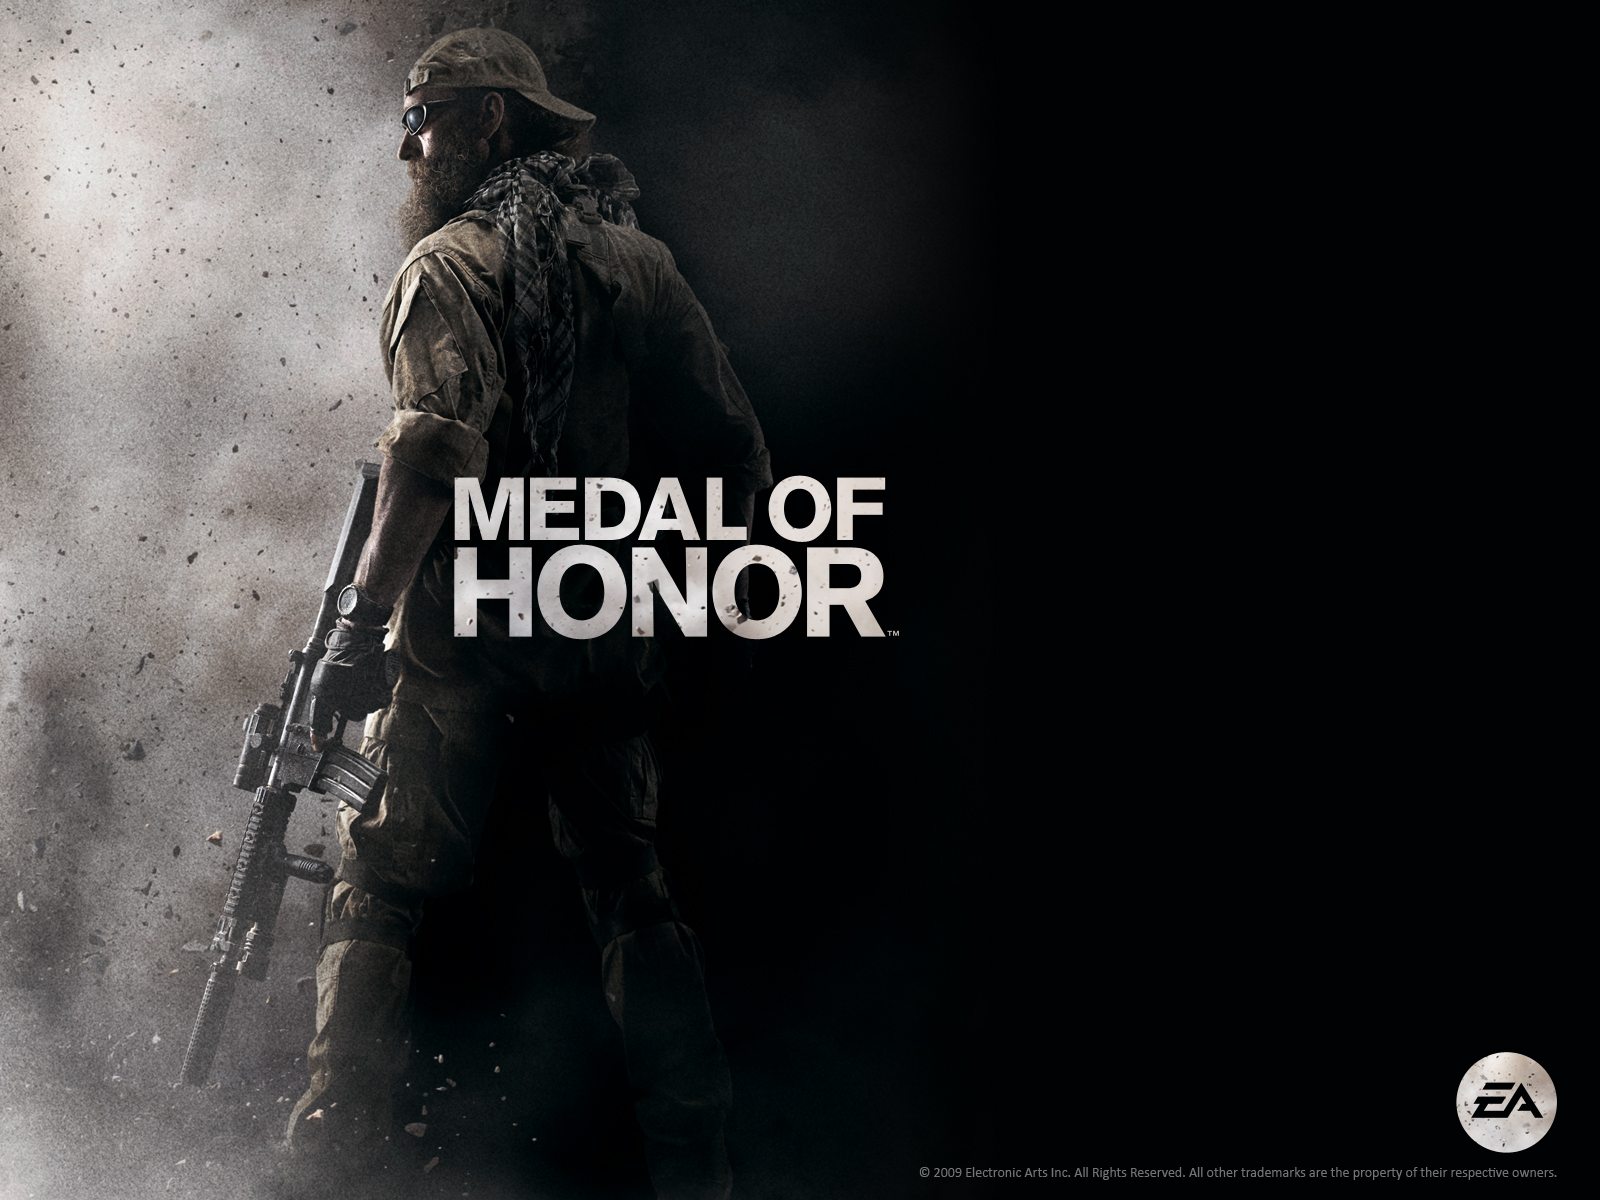 34+] Medal of Honor Wallpapers - WallpaperSafari